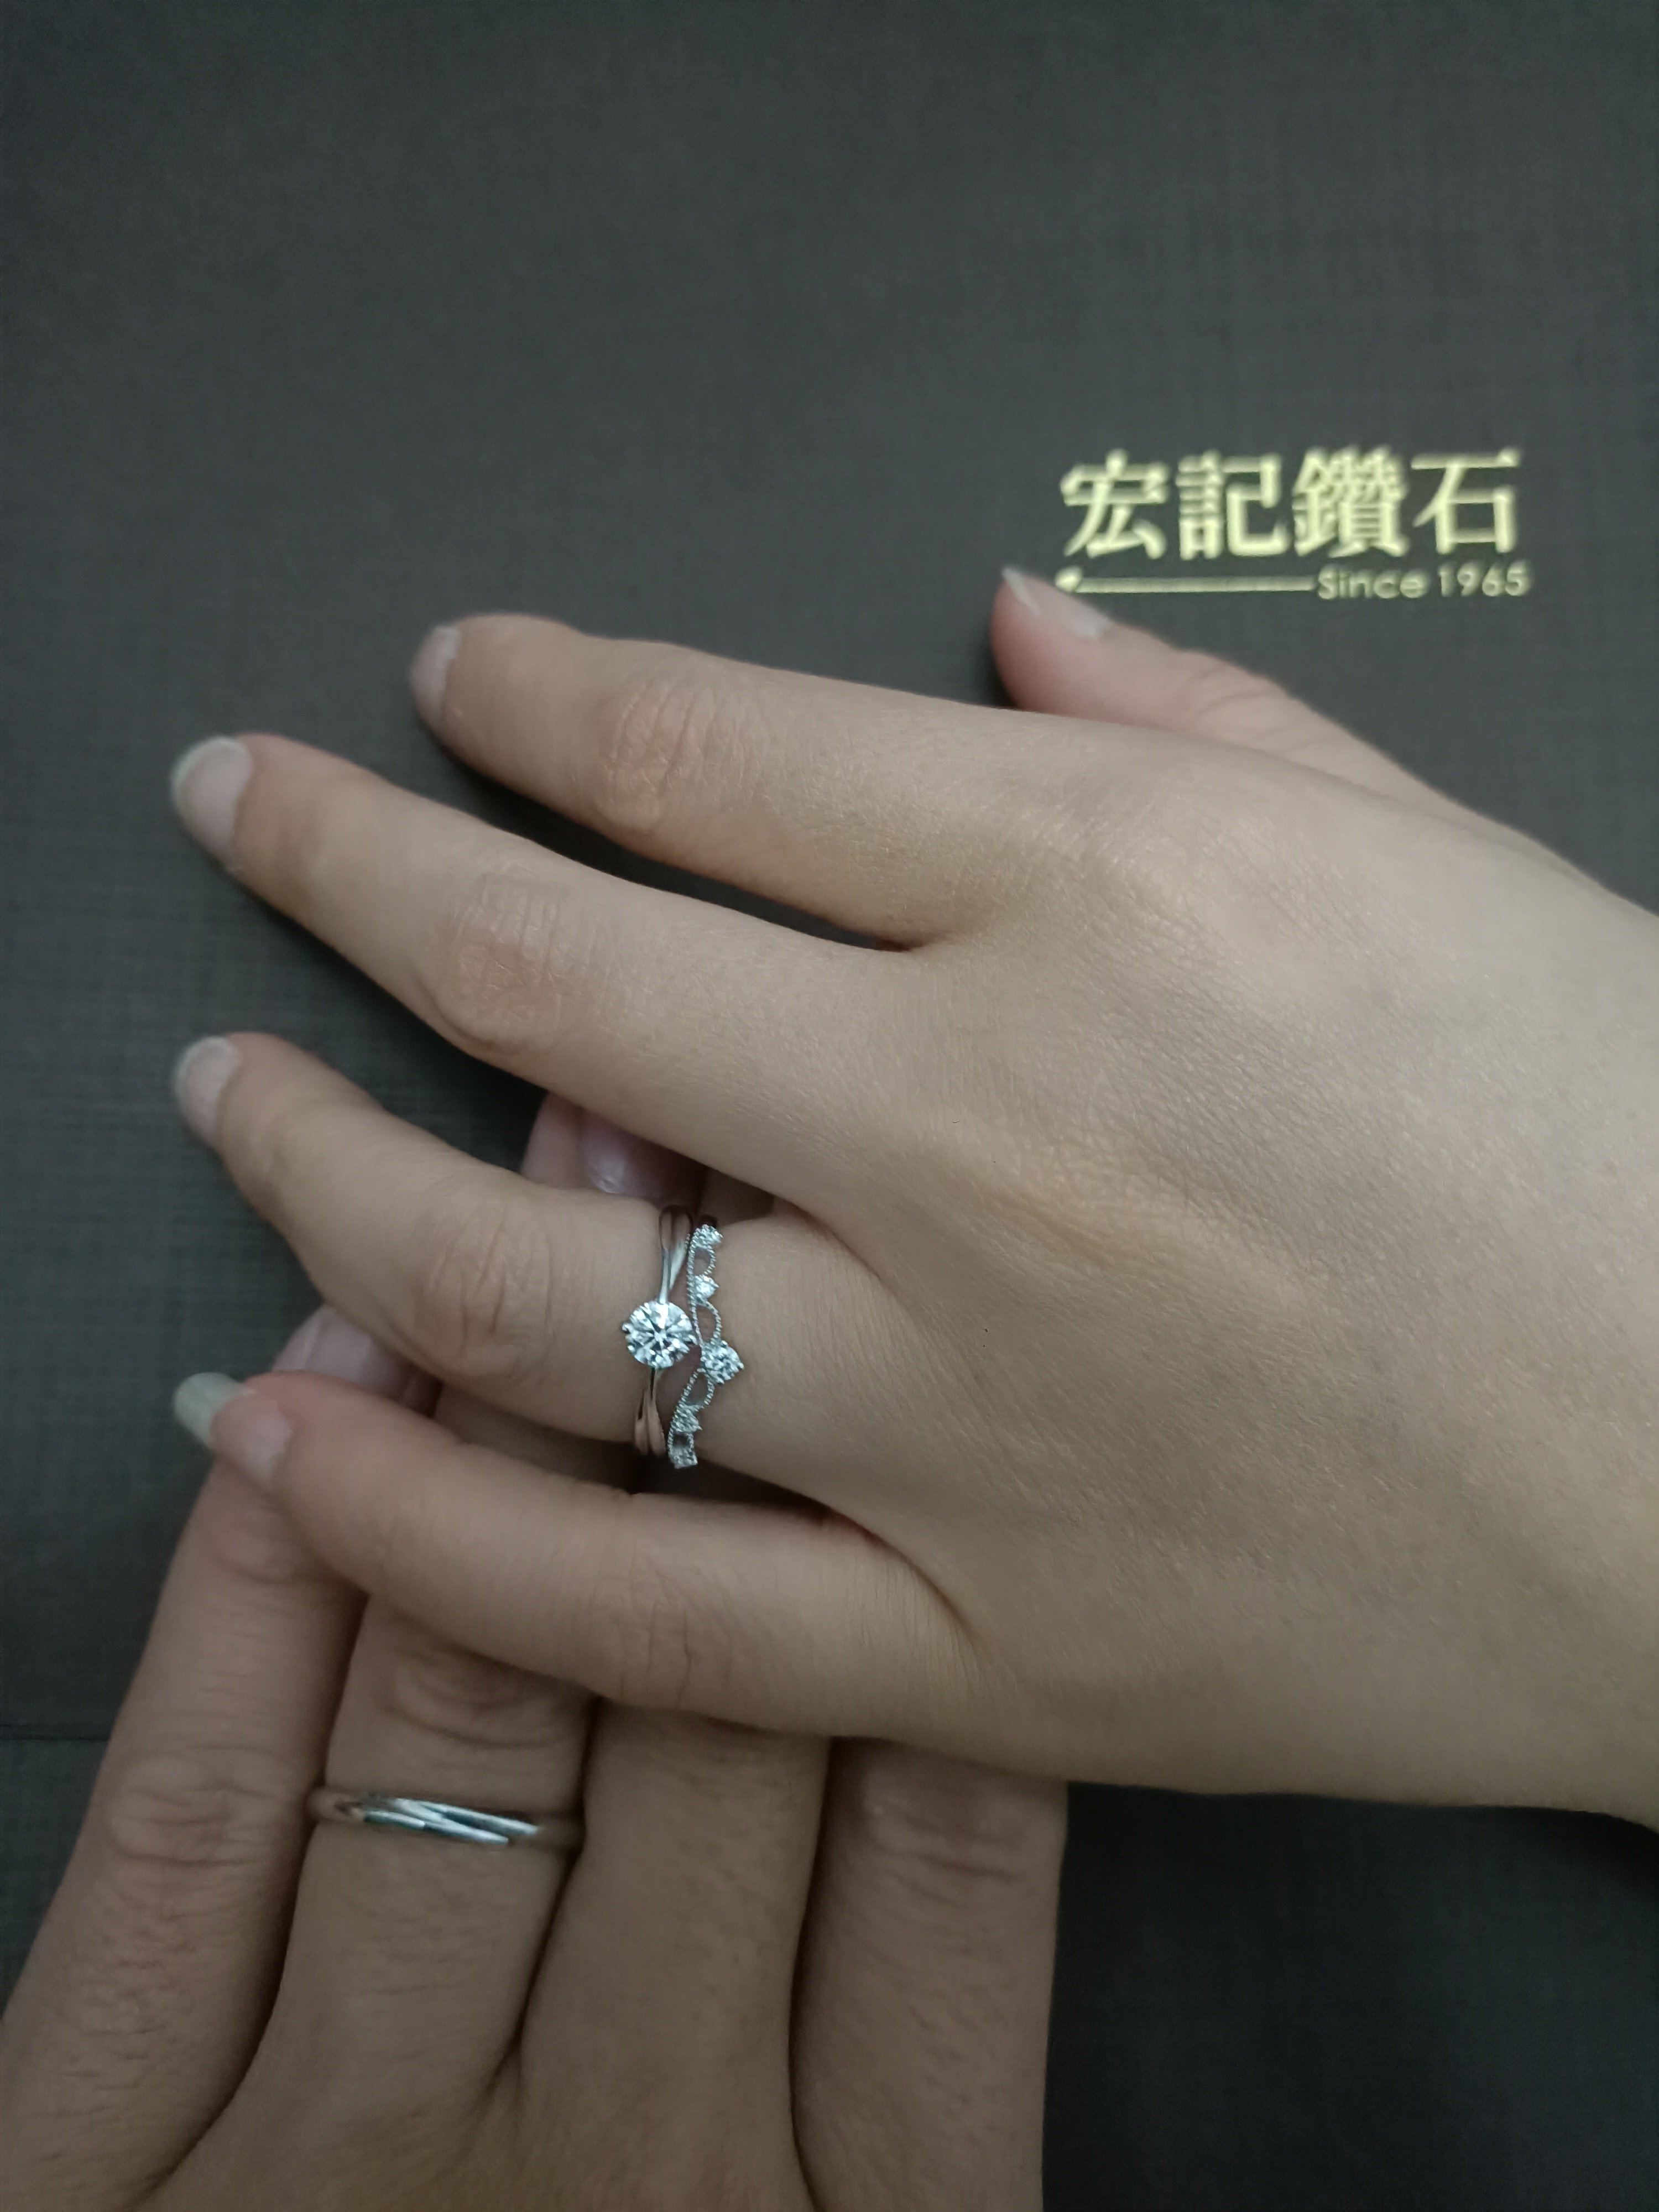 台北市 宏記鑽石 選擇沒煩惱-婚禮廠商評價